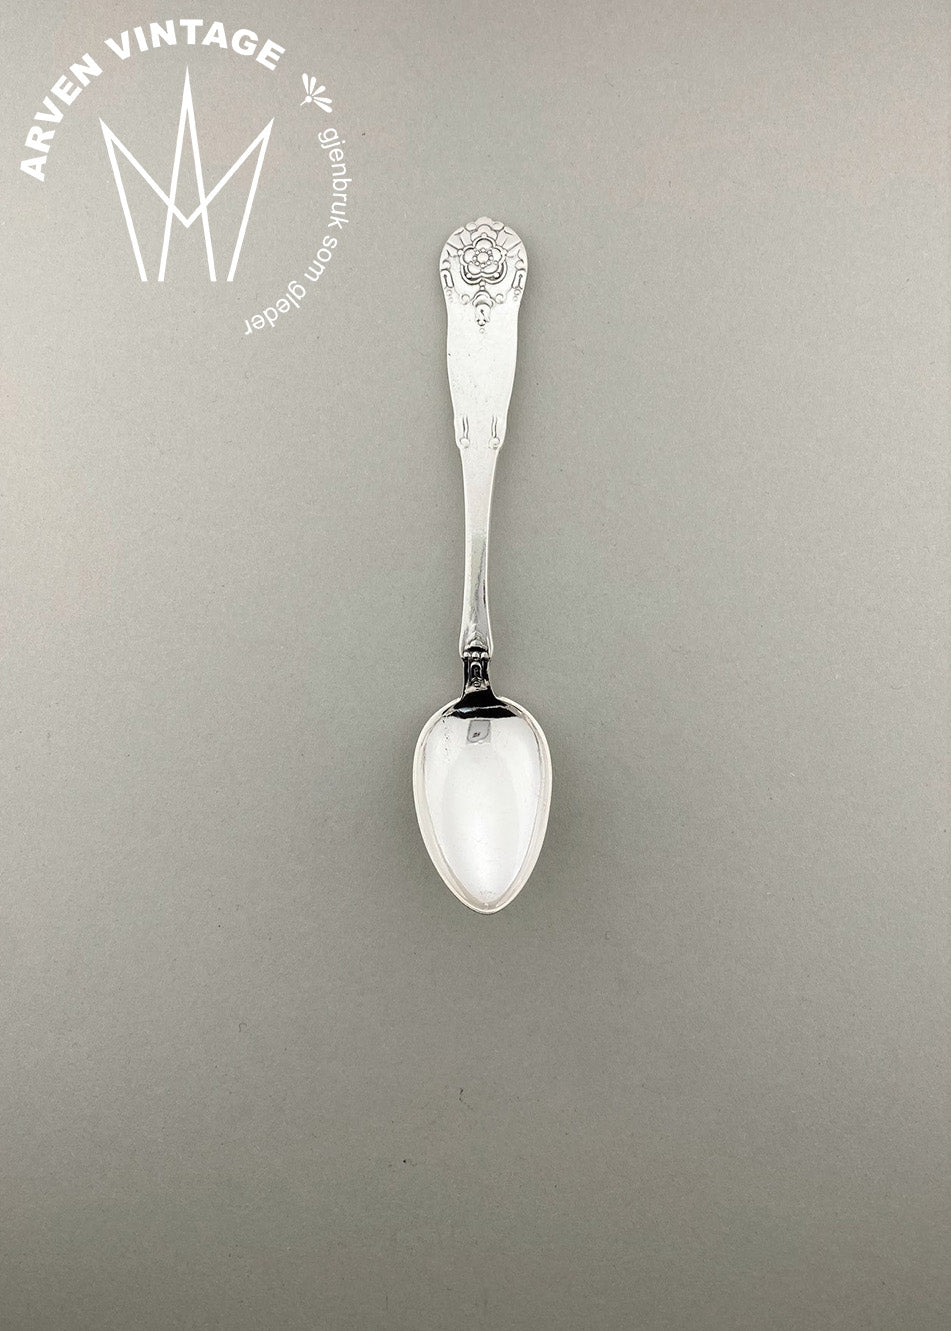 Vintage Hardanger teaspoon